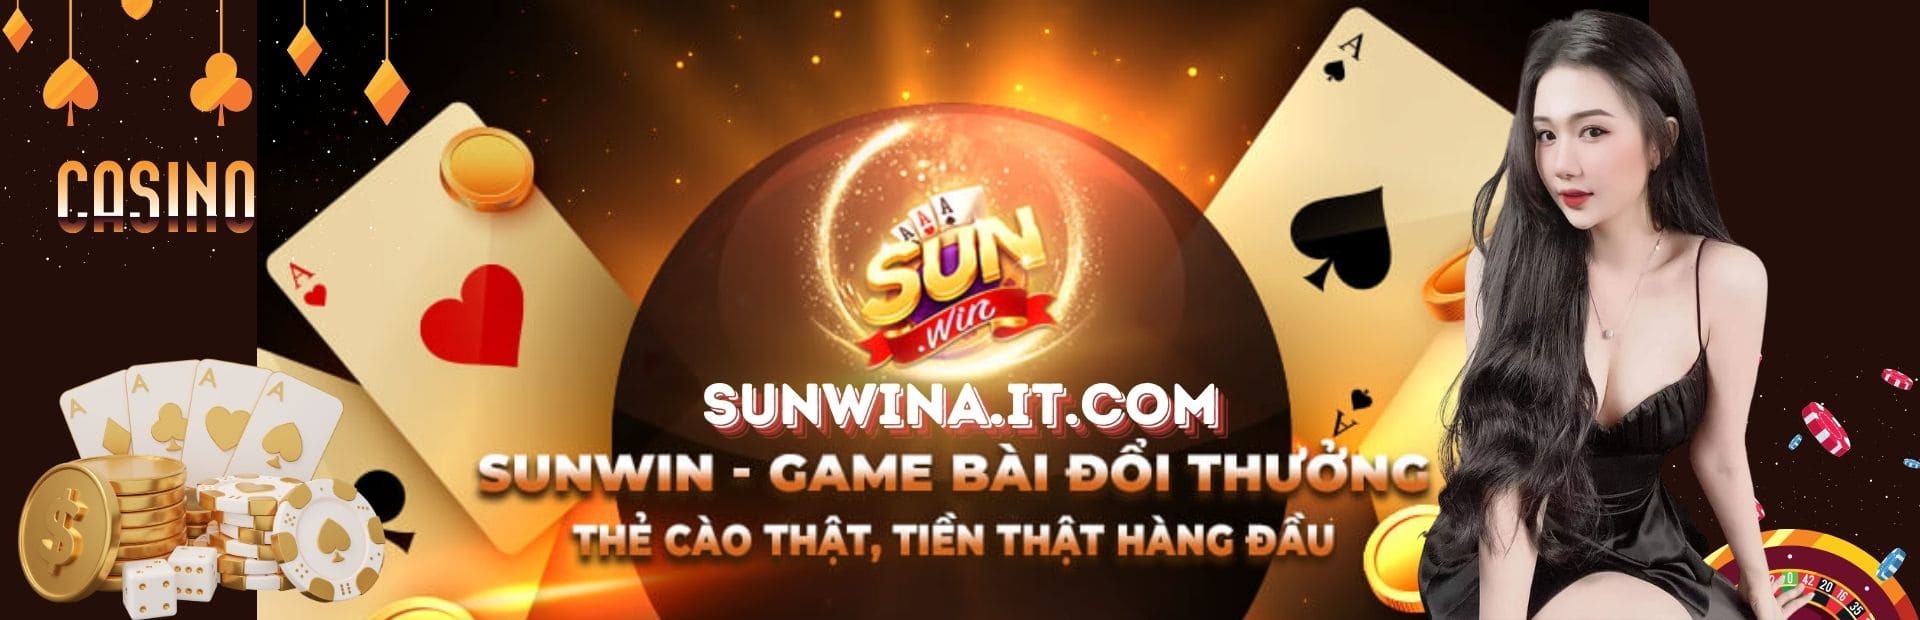 sunwin - cổng game bài đổi thưởng số 1